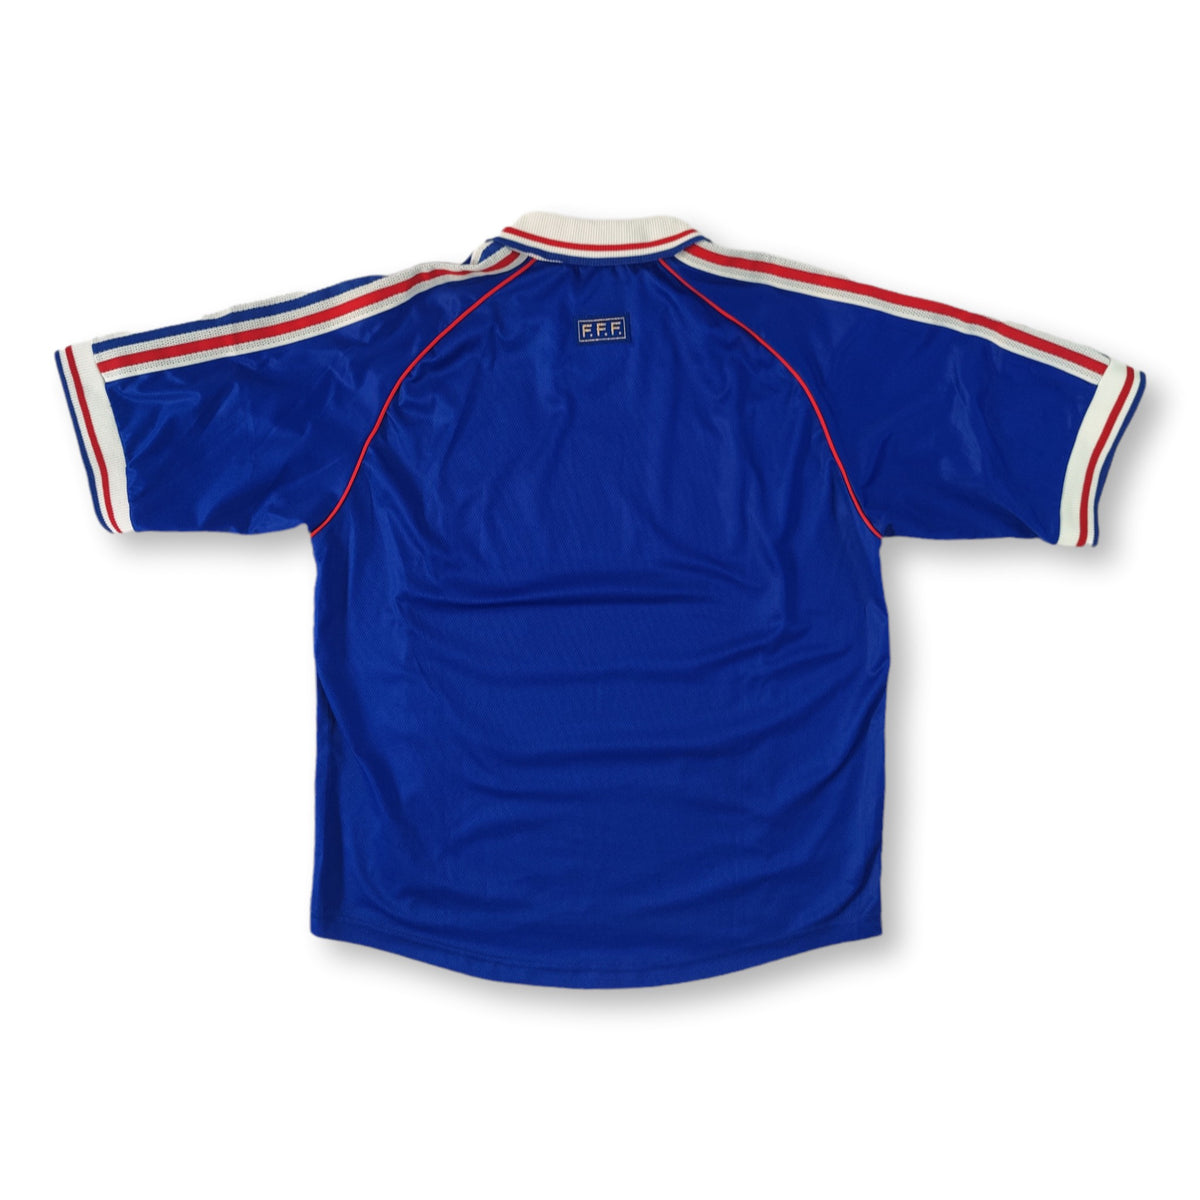 France 1998 Home Short Sleeve Maillot Football Shirt [As worn by Zidane,  Henry & Deschamps]